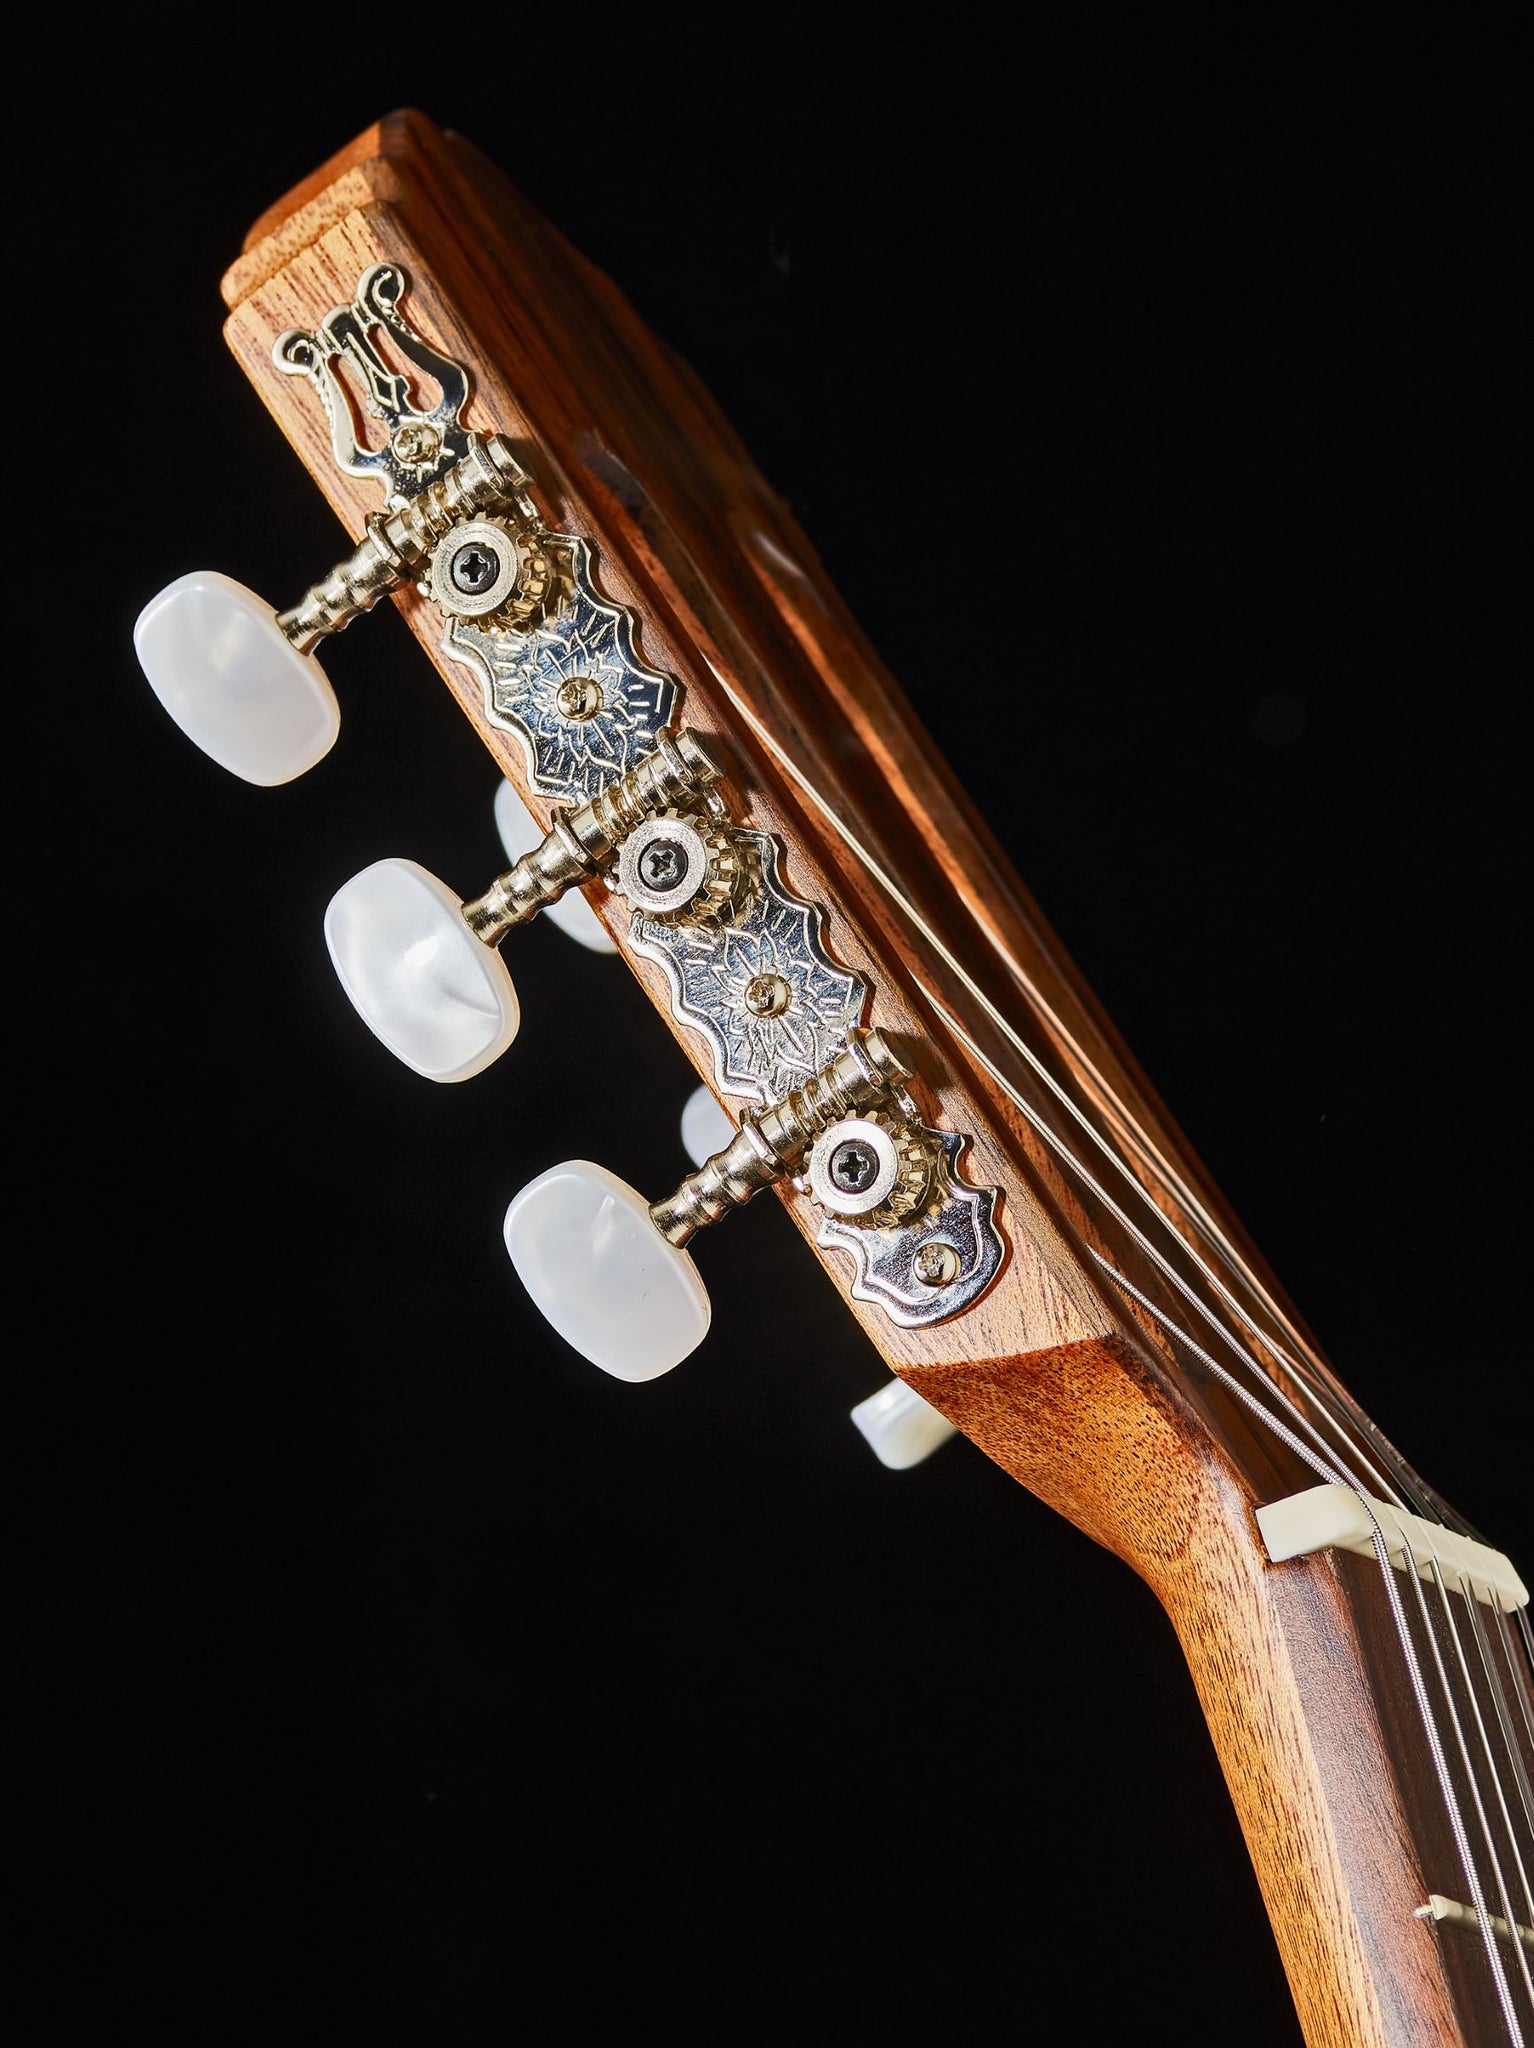 Classical guitar strings